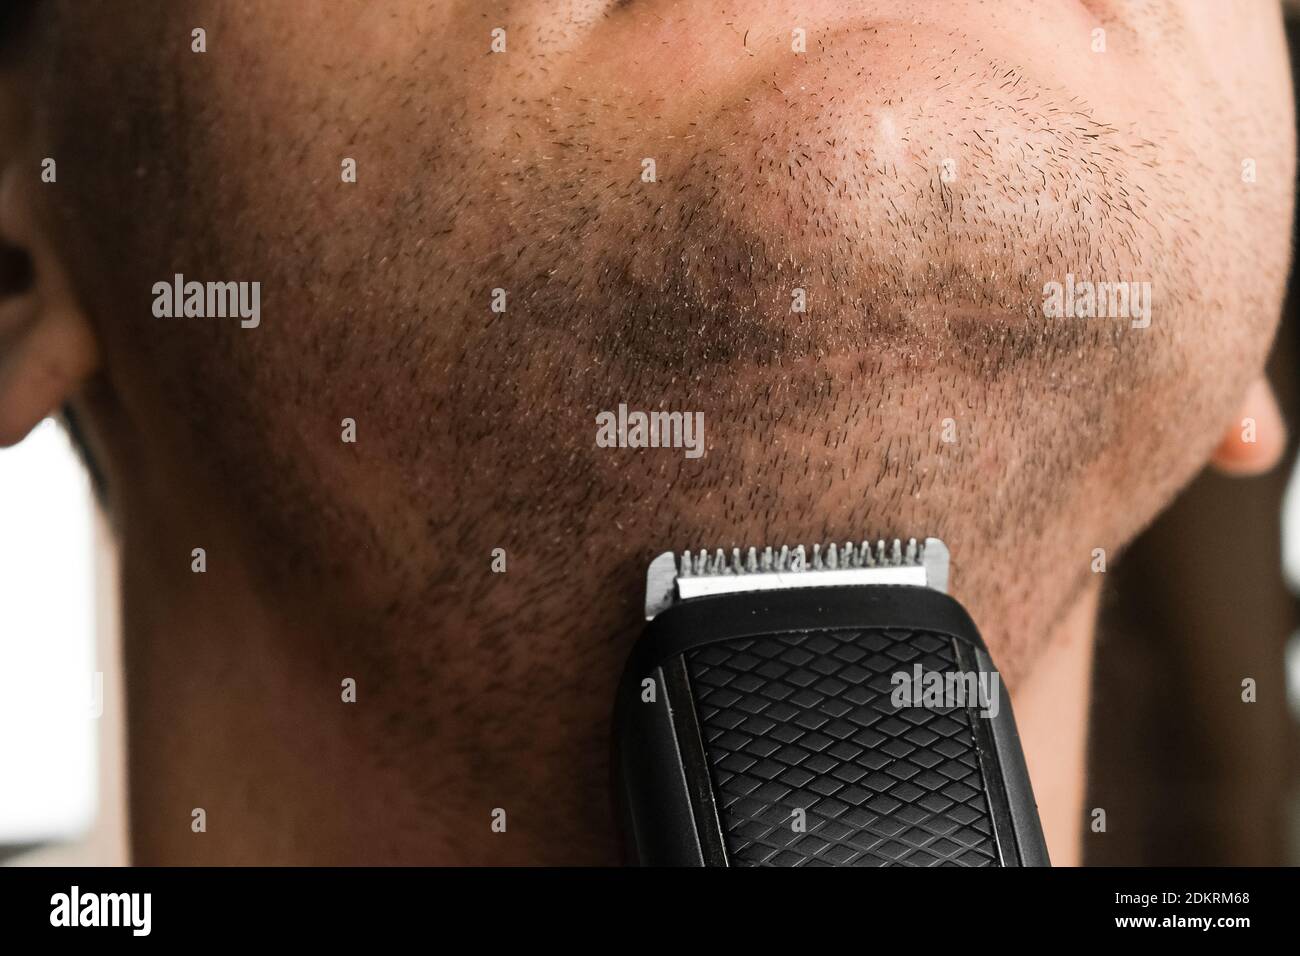 Mann, der seinen kurzen Stoppeln rasiert. Irritation nach elektrischen Rasiermesser Rasur Konzept. Stockfoto